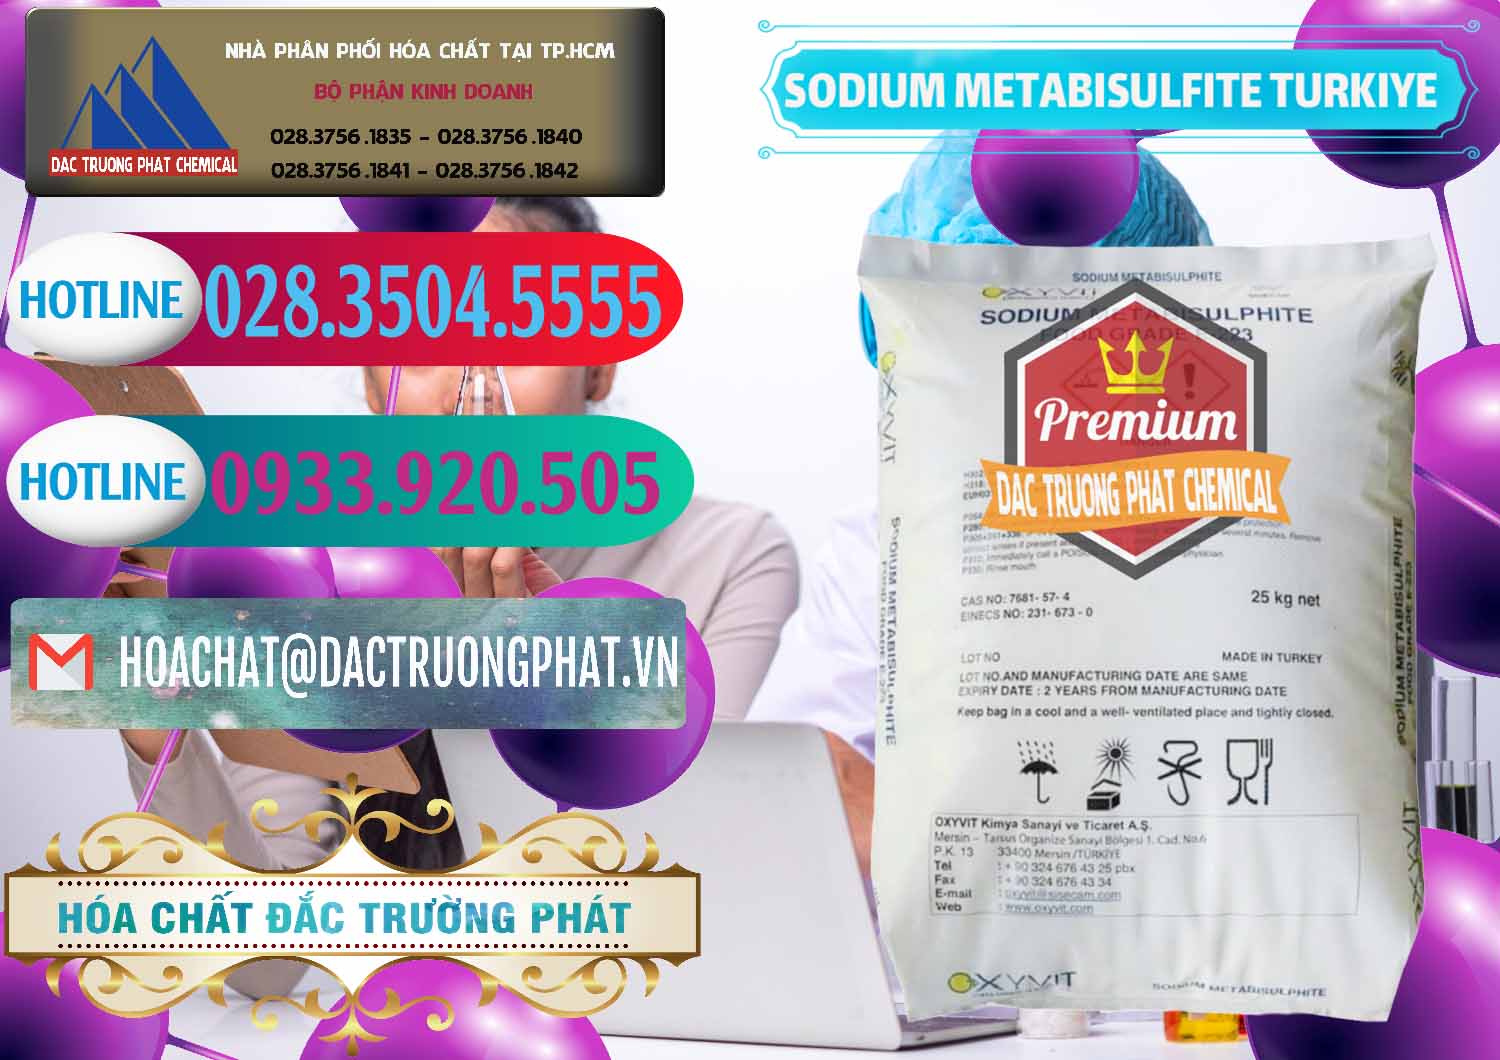 Nơi chuyên cung cấp và bán Sodium Metabisulfite - NA2S2O5 Food Grade E-223 Thổ Nhĩ Kỳ Turkey - 0413 - Cty cung cấp ( nhập khẩu ) hóa chất tại TP.HCM - truongphat.vn